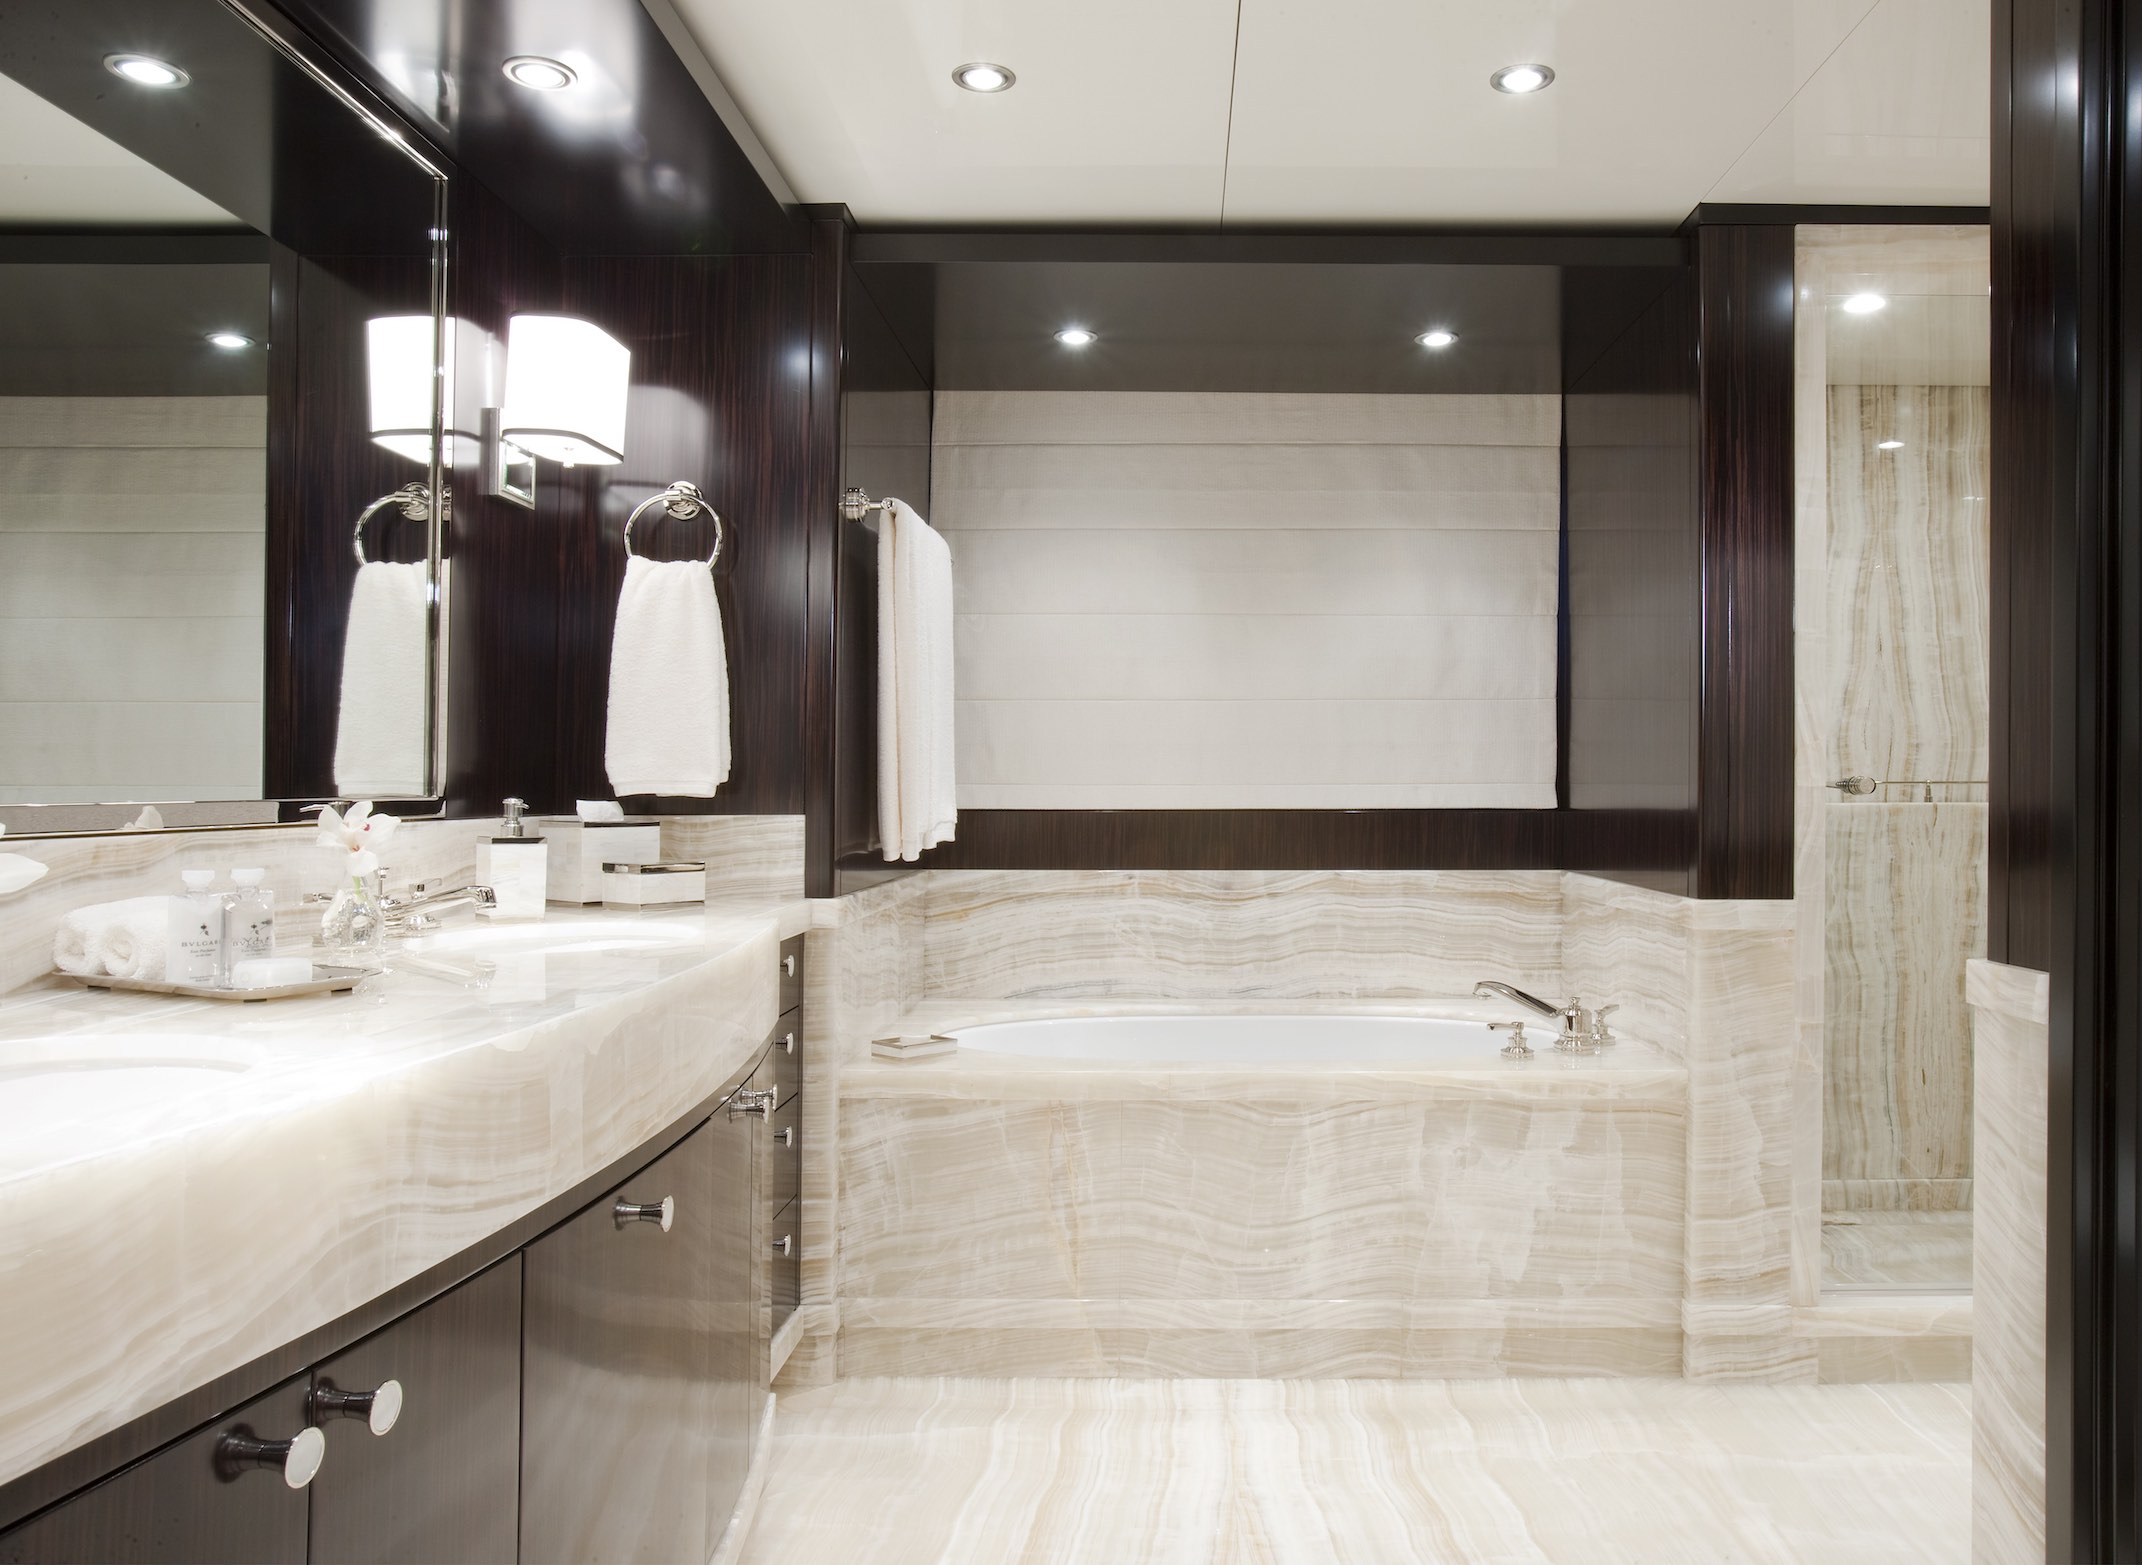 Carpe Diem Luxury Yacht bathroom with rub